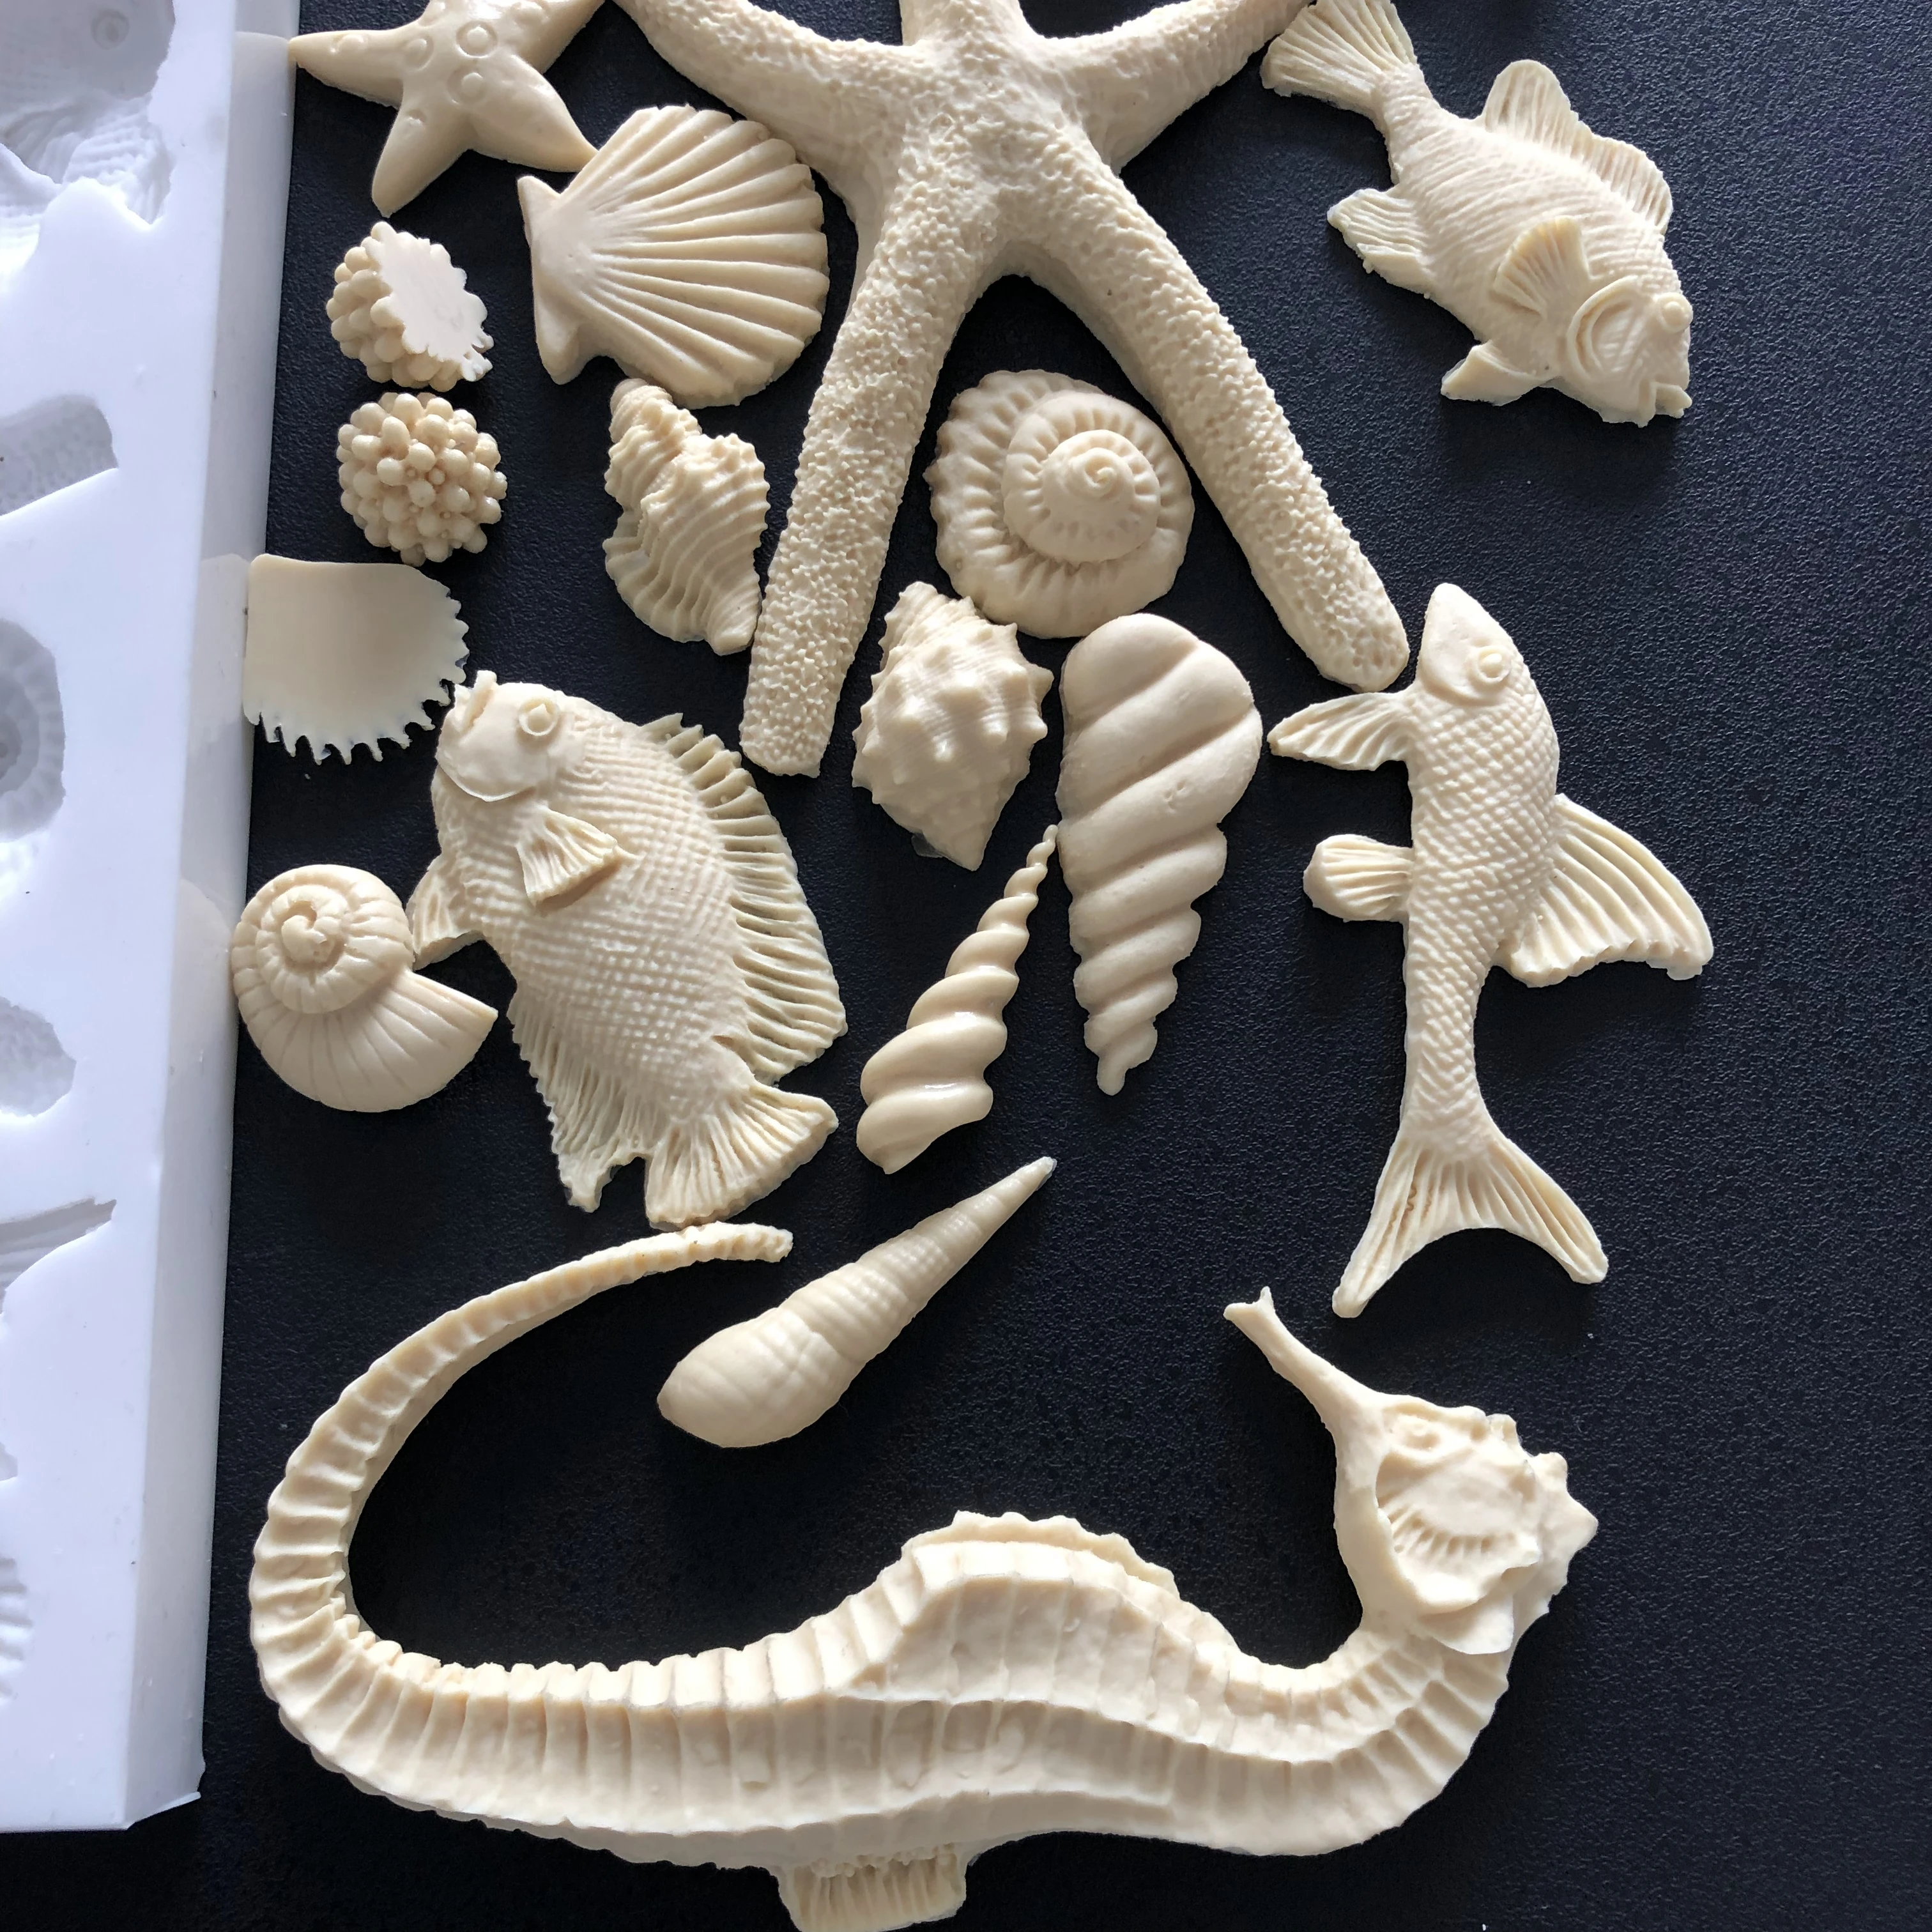 PRZY океан Морской конек Морская звезда раковина для рыбы раковины помадка формы силиконовая форма для ручной работы DIY Арома Плесень мыло решений формы смолы глины